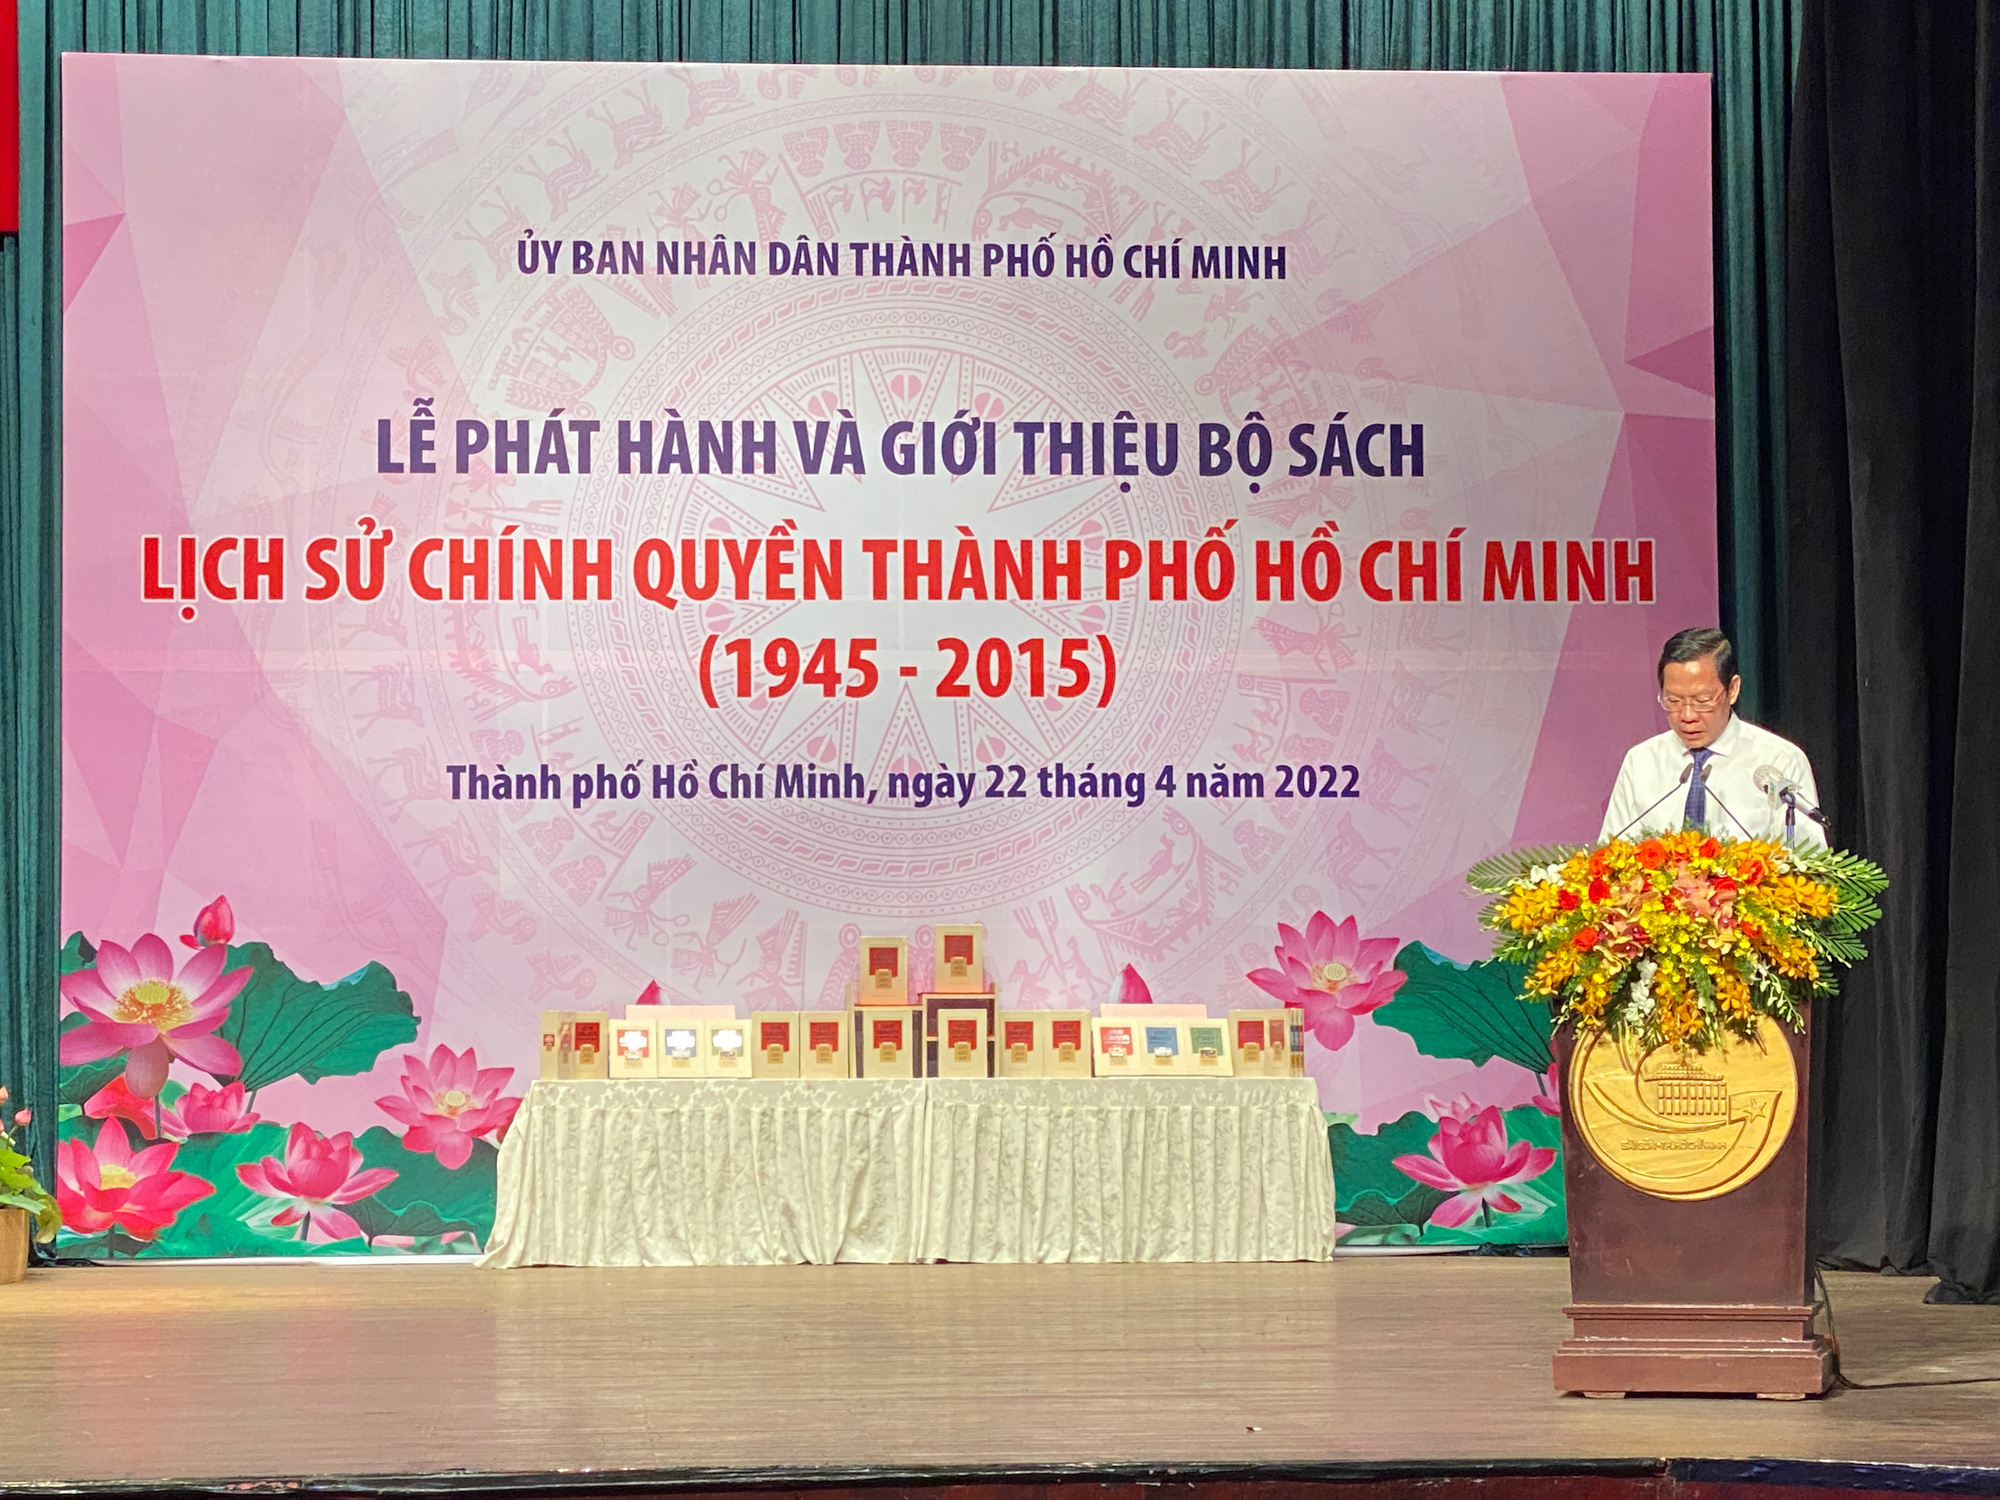 Phát hành bộ sách Lịch sử chính quyền TP Hồ Chí Minh 1945-2015 - Ảnh 1.